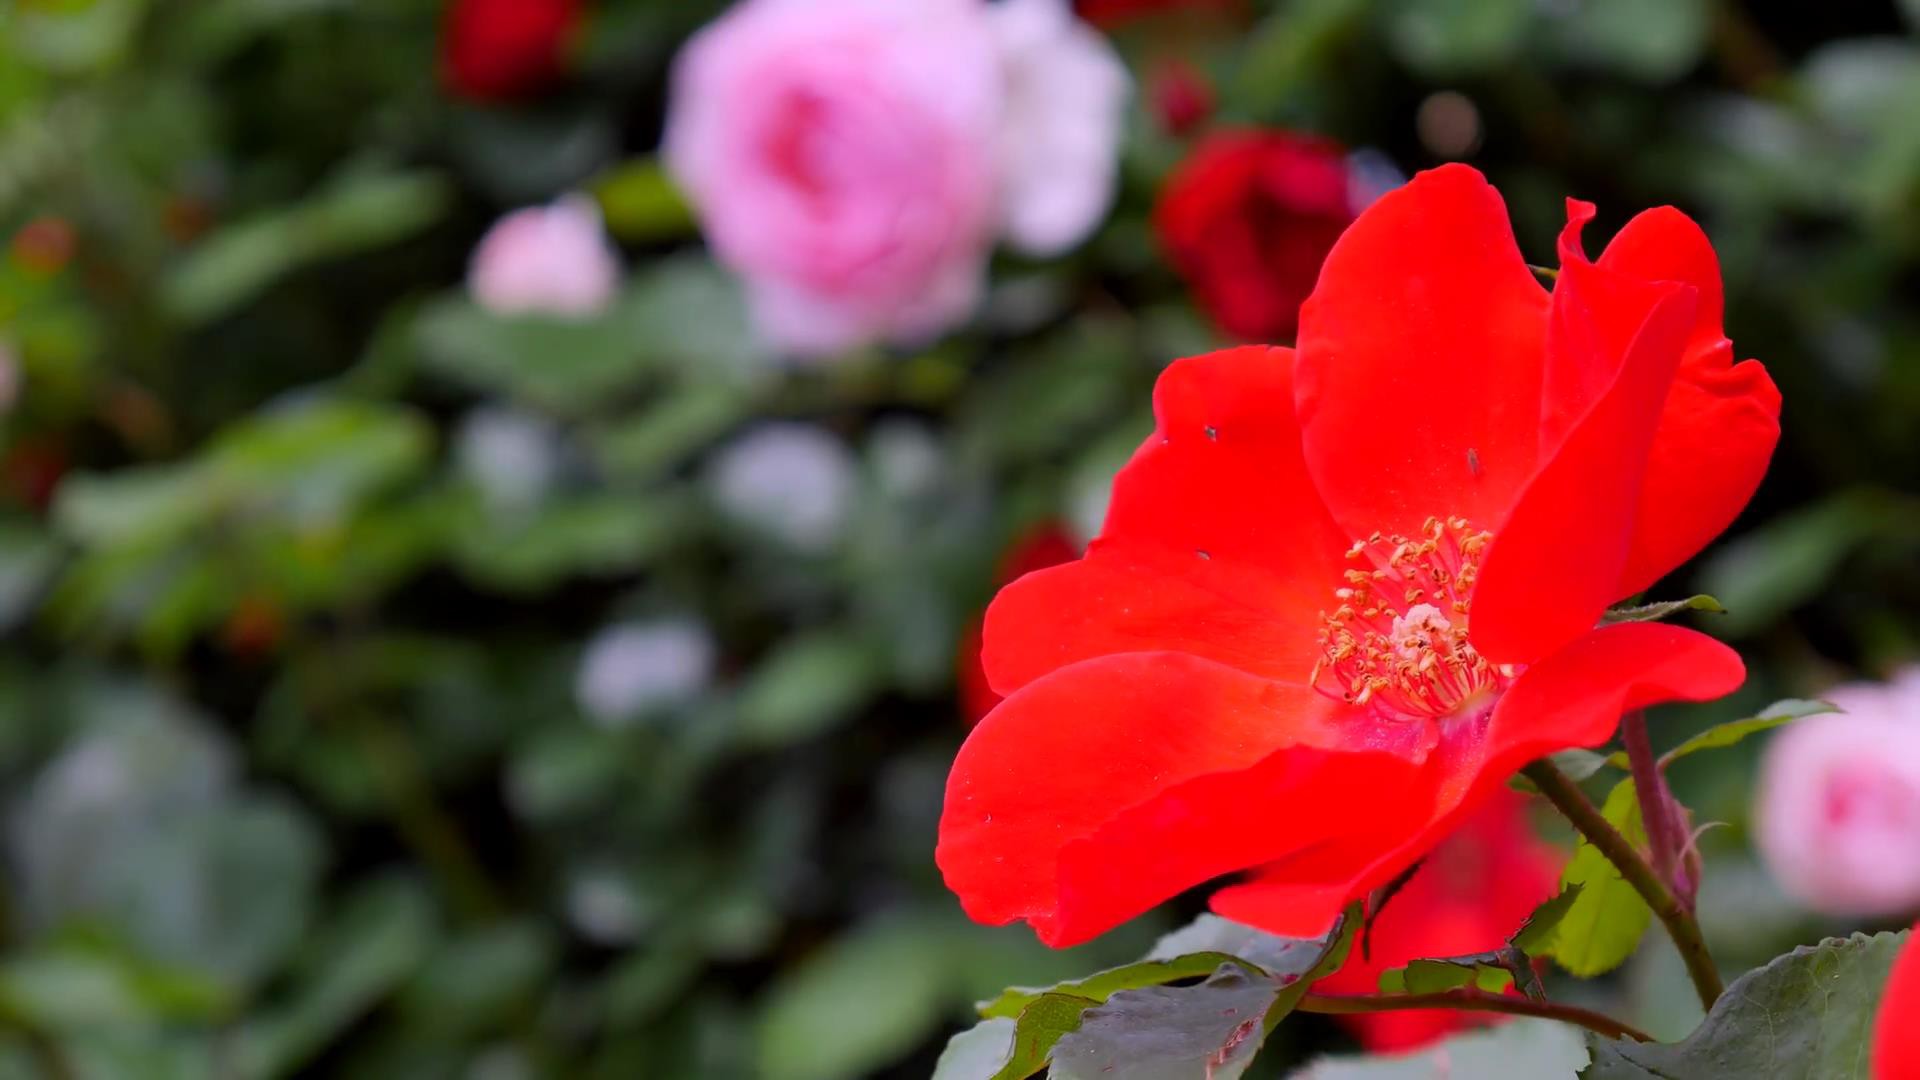 Đến thăm khu vườn trên đảo ở Nhật Bản với 2.600 cây hoa hồng rung rinh trước gió đẹp mê mẩn lòng người - Ảnh 22.